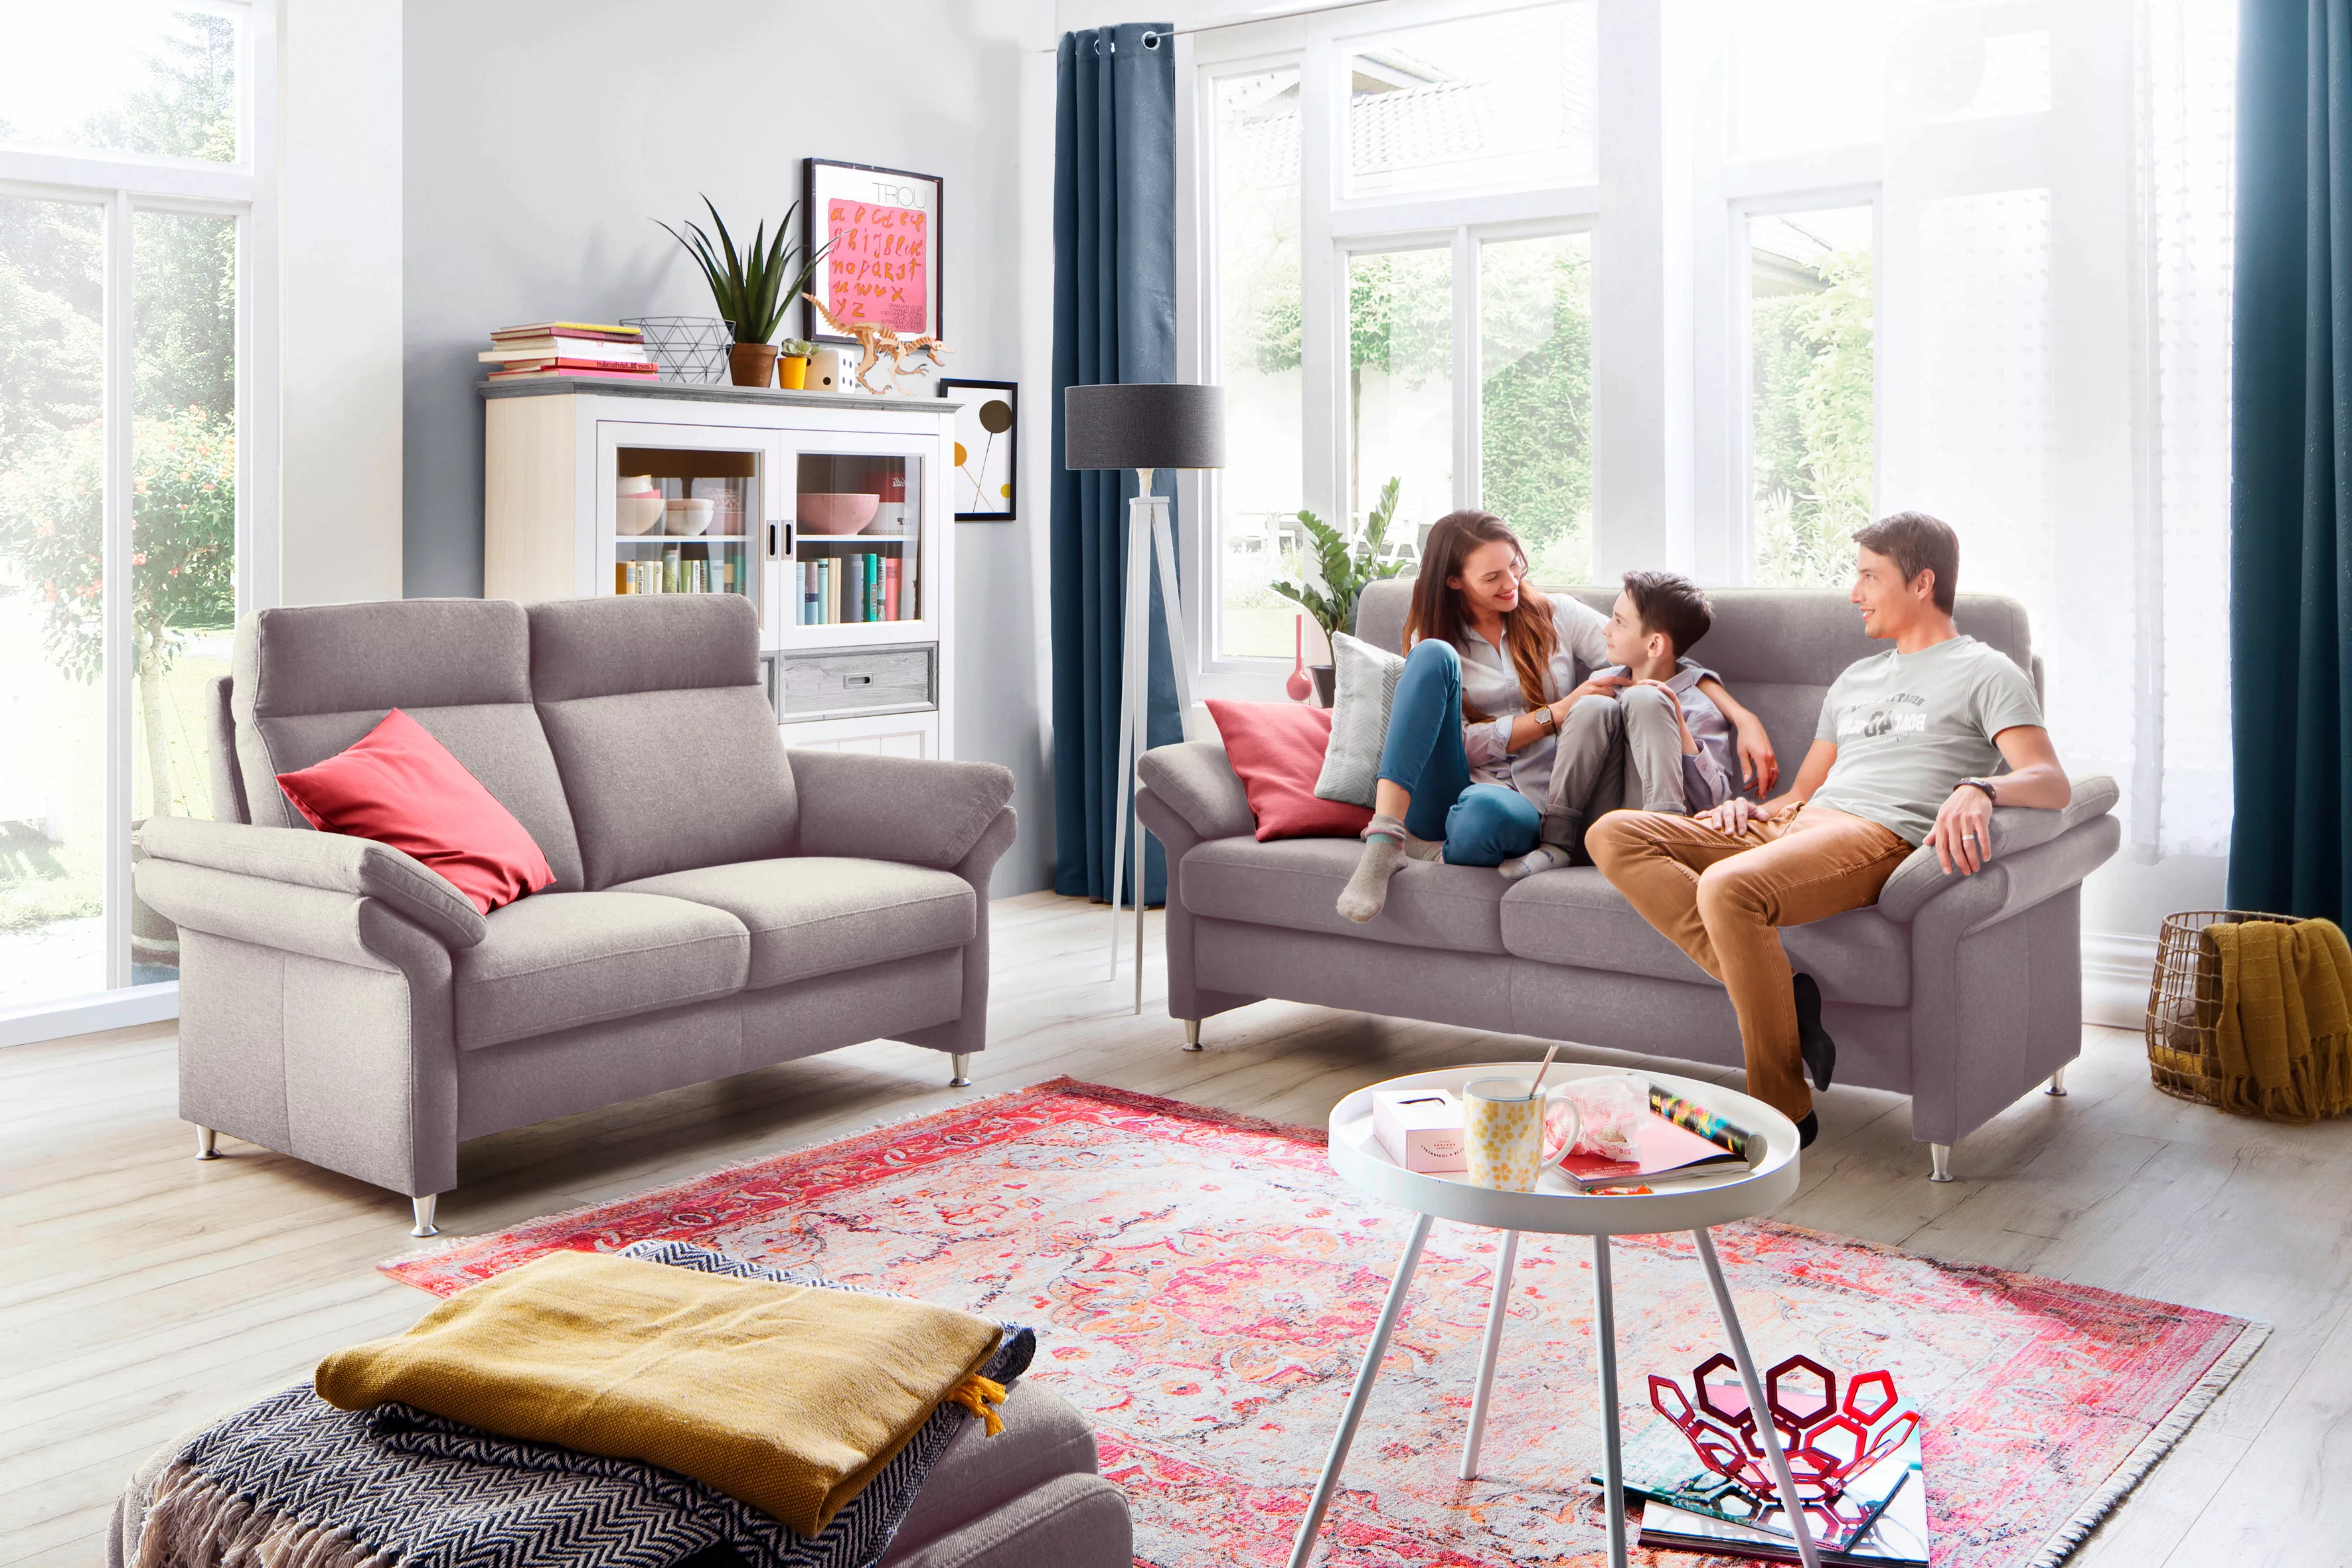 Home affaire Sessel "Mailand", mit komfortablem Federkern-Sitz, wahlweise m günstig online kaufen